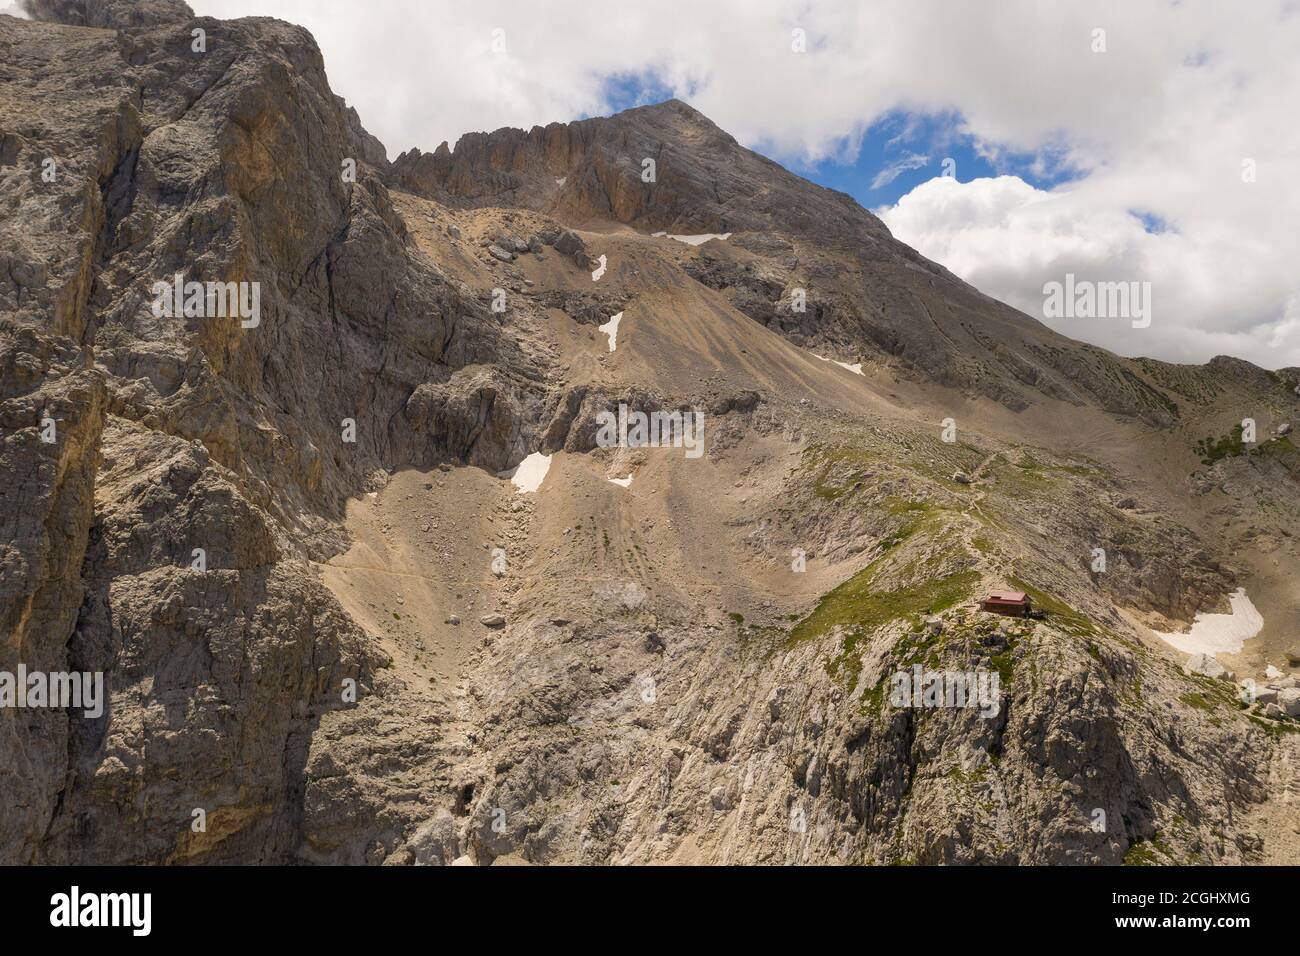 Veduta aerea del rifugio Franchetti a cavallo delle due corna nella zona montana del gran sasso italia abruzzo con una vista sulla cima del corno gra Foto Stock